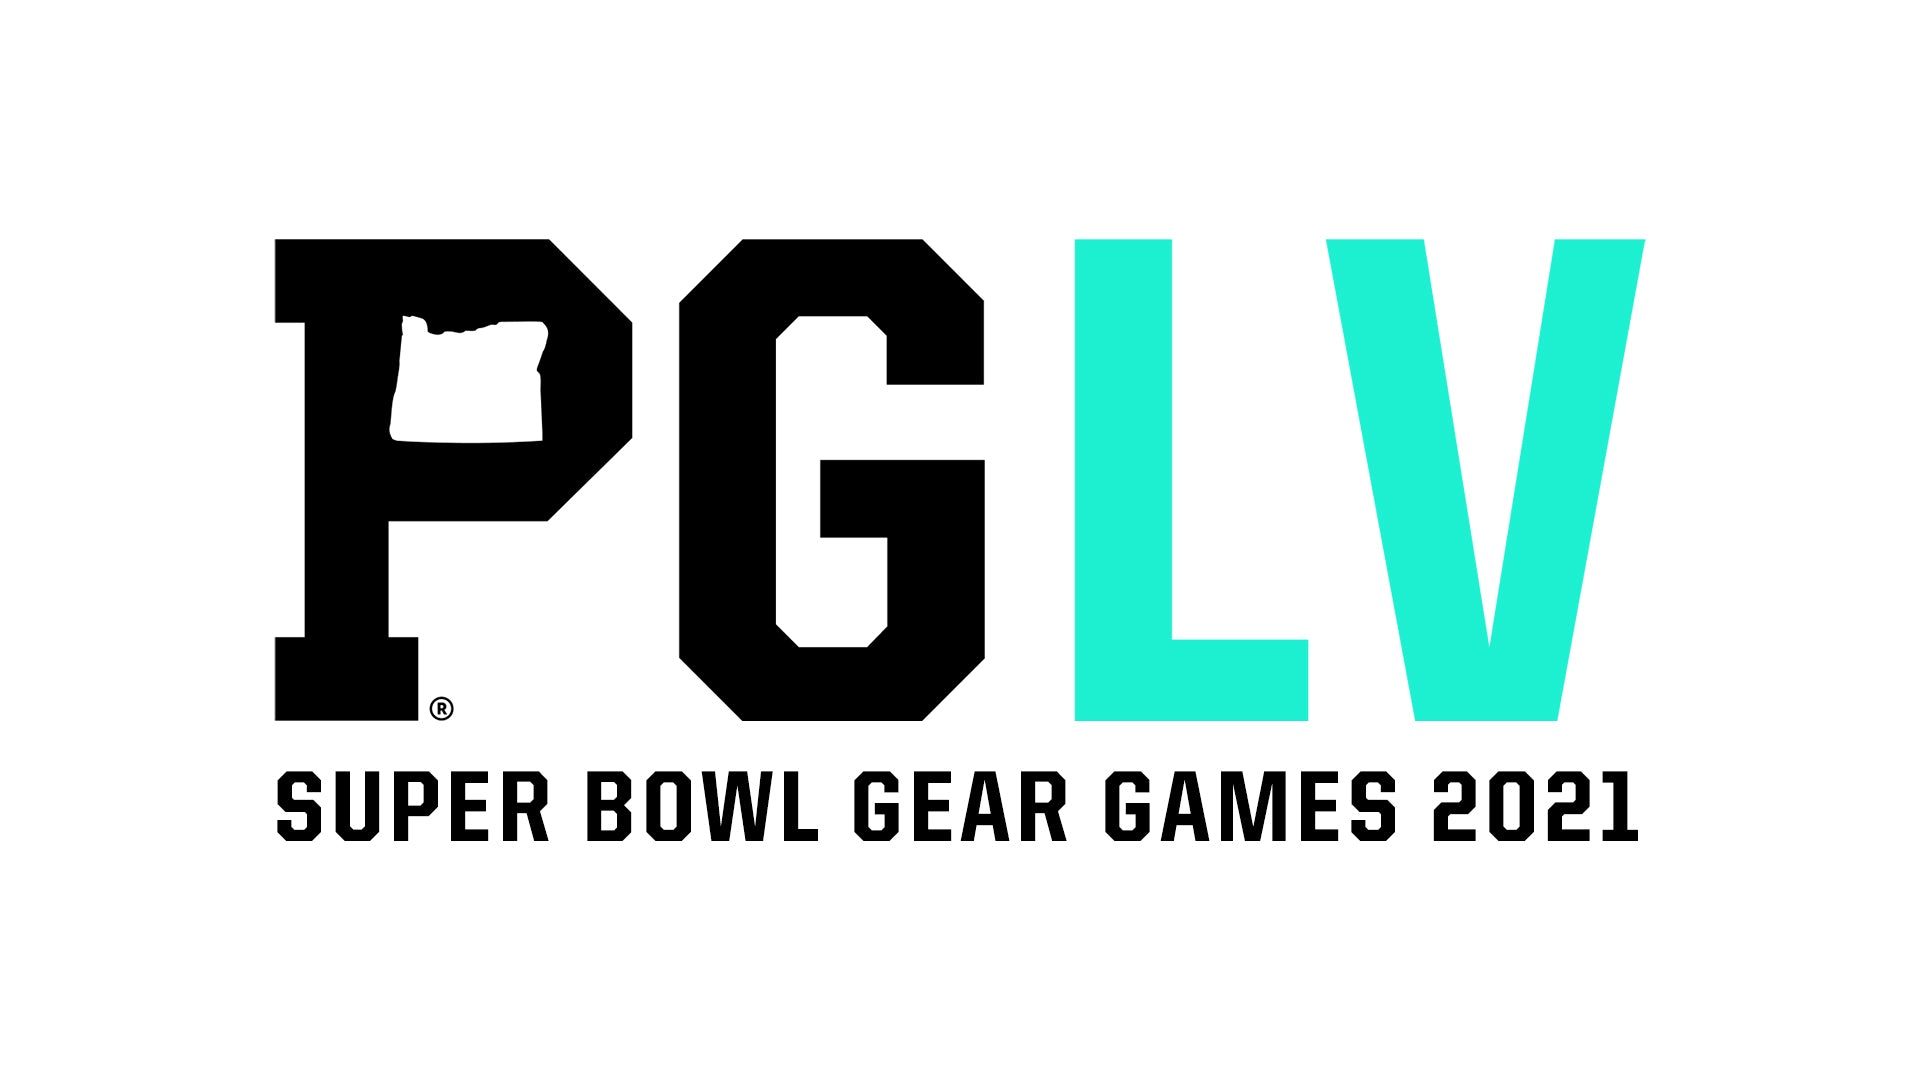 Super Bowl Gear Games 2021